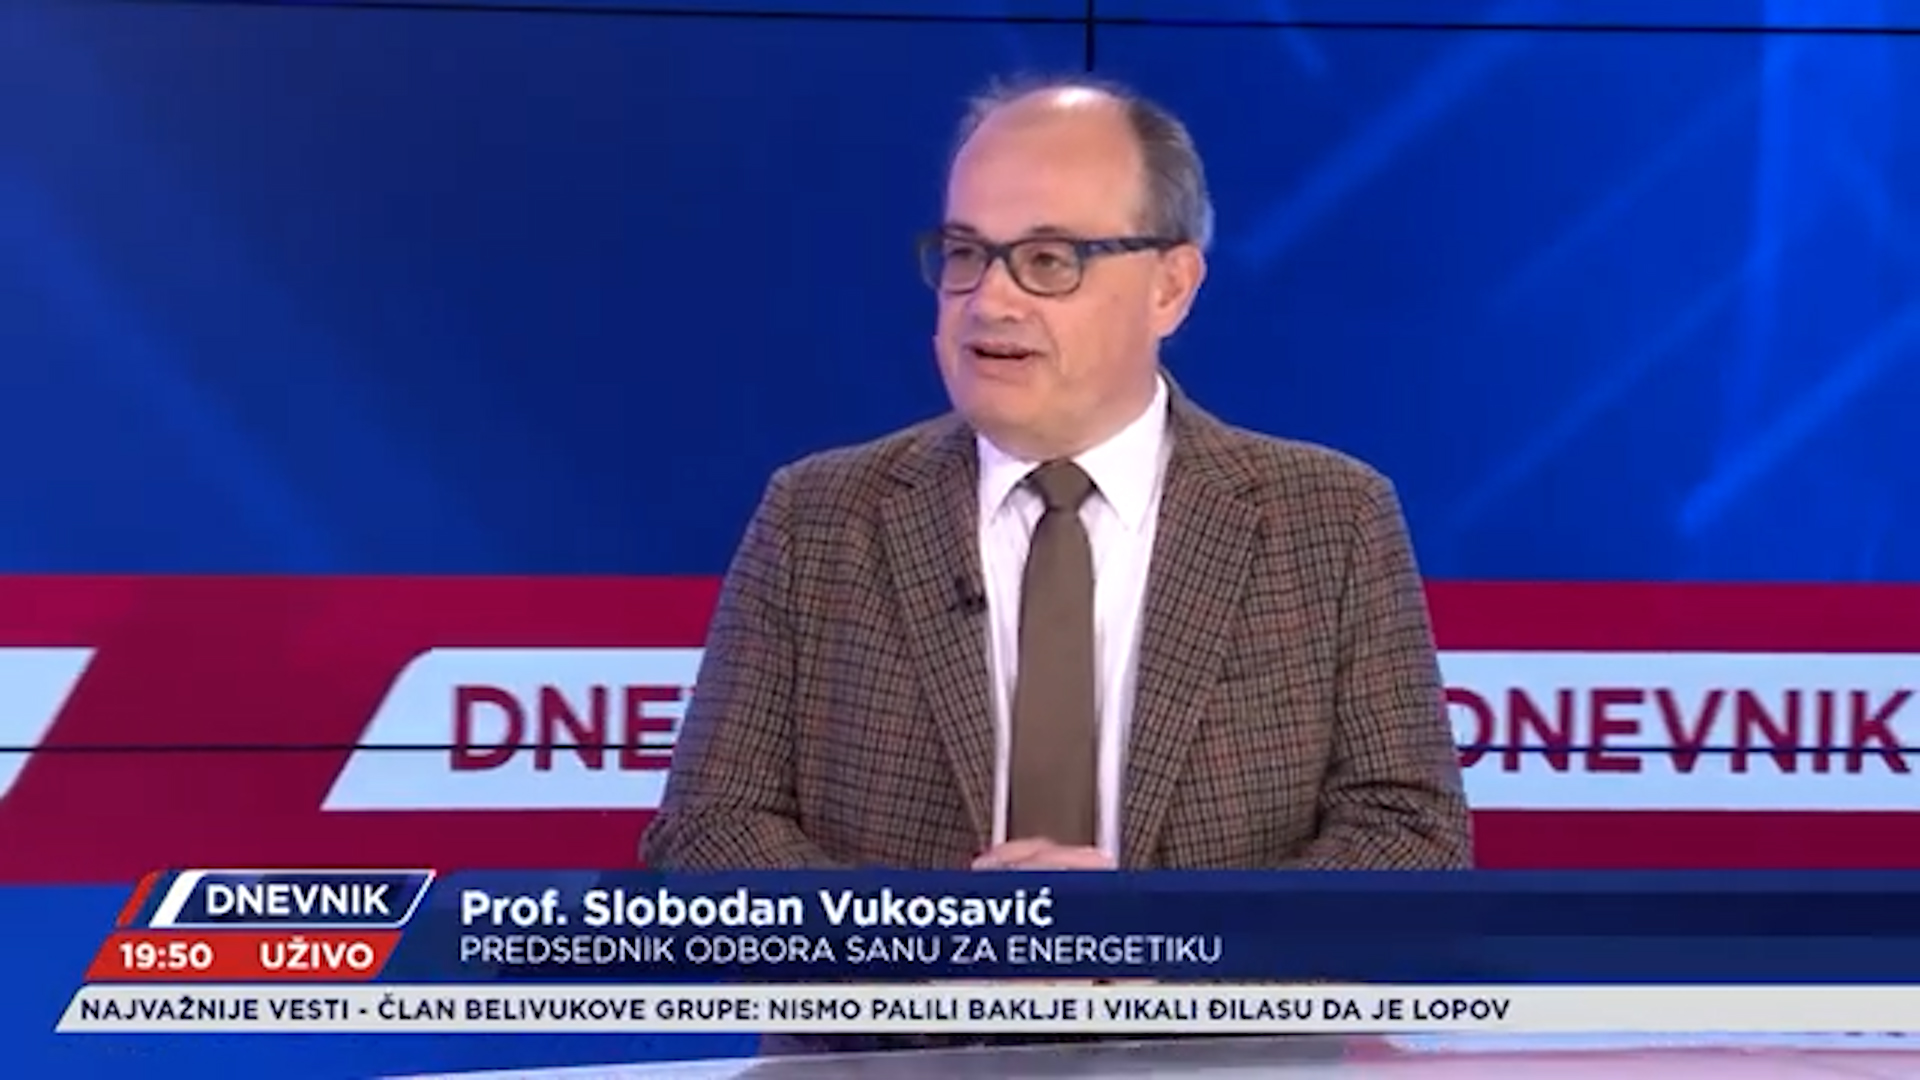 GOST Prof. Slobodan Vukosavić PREDSEDNIK ODBORA SANU ZA ENERGETIKU